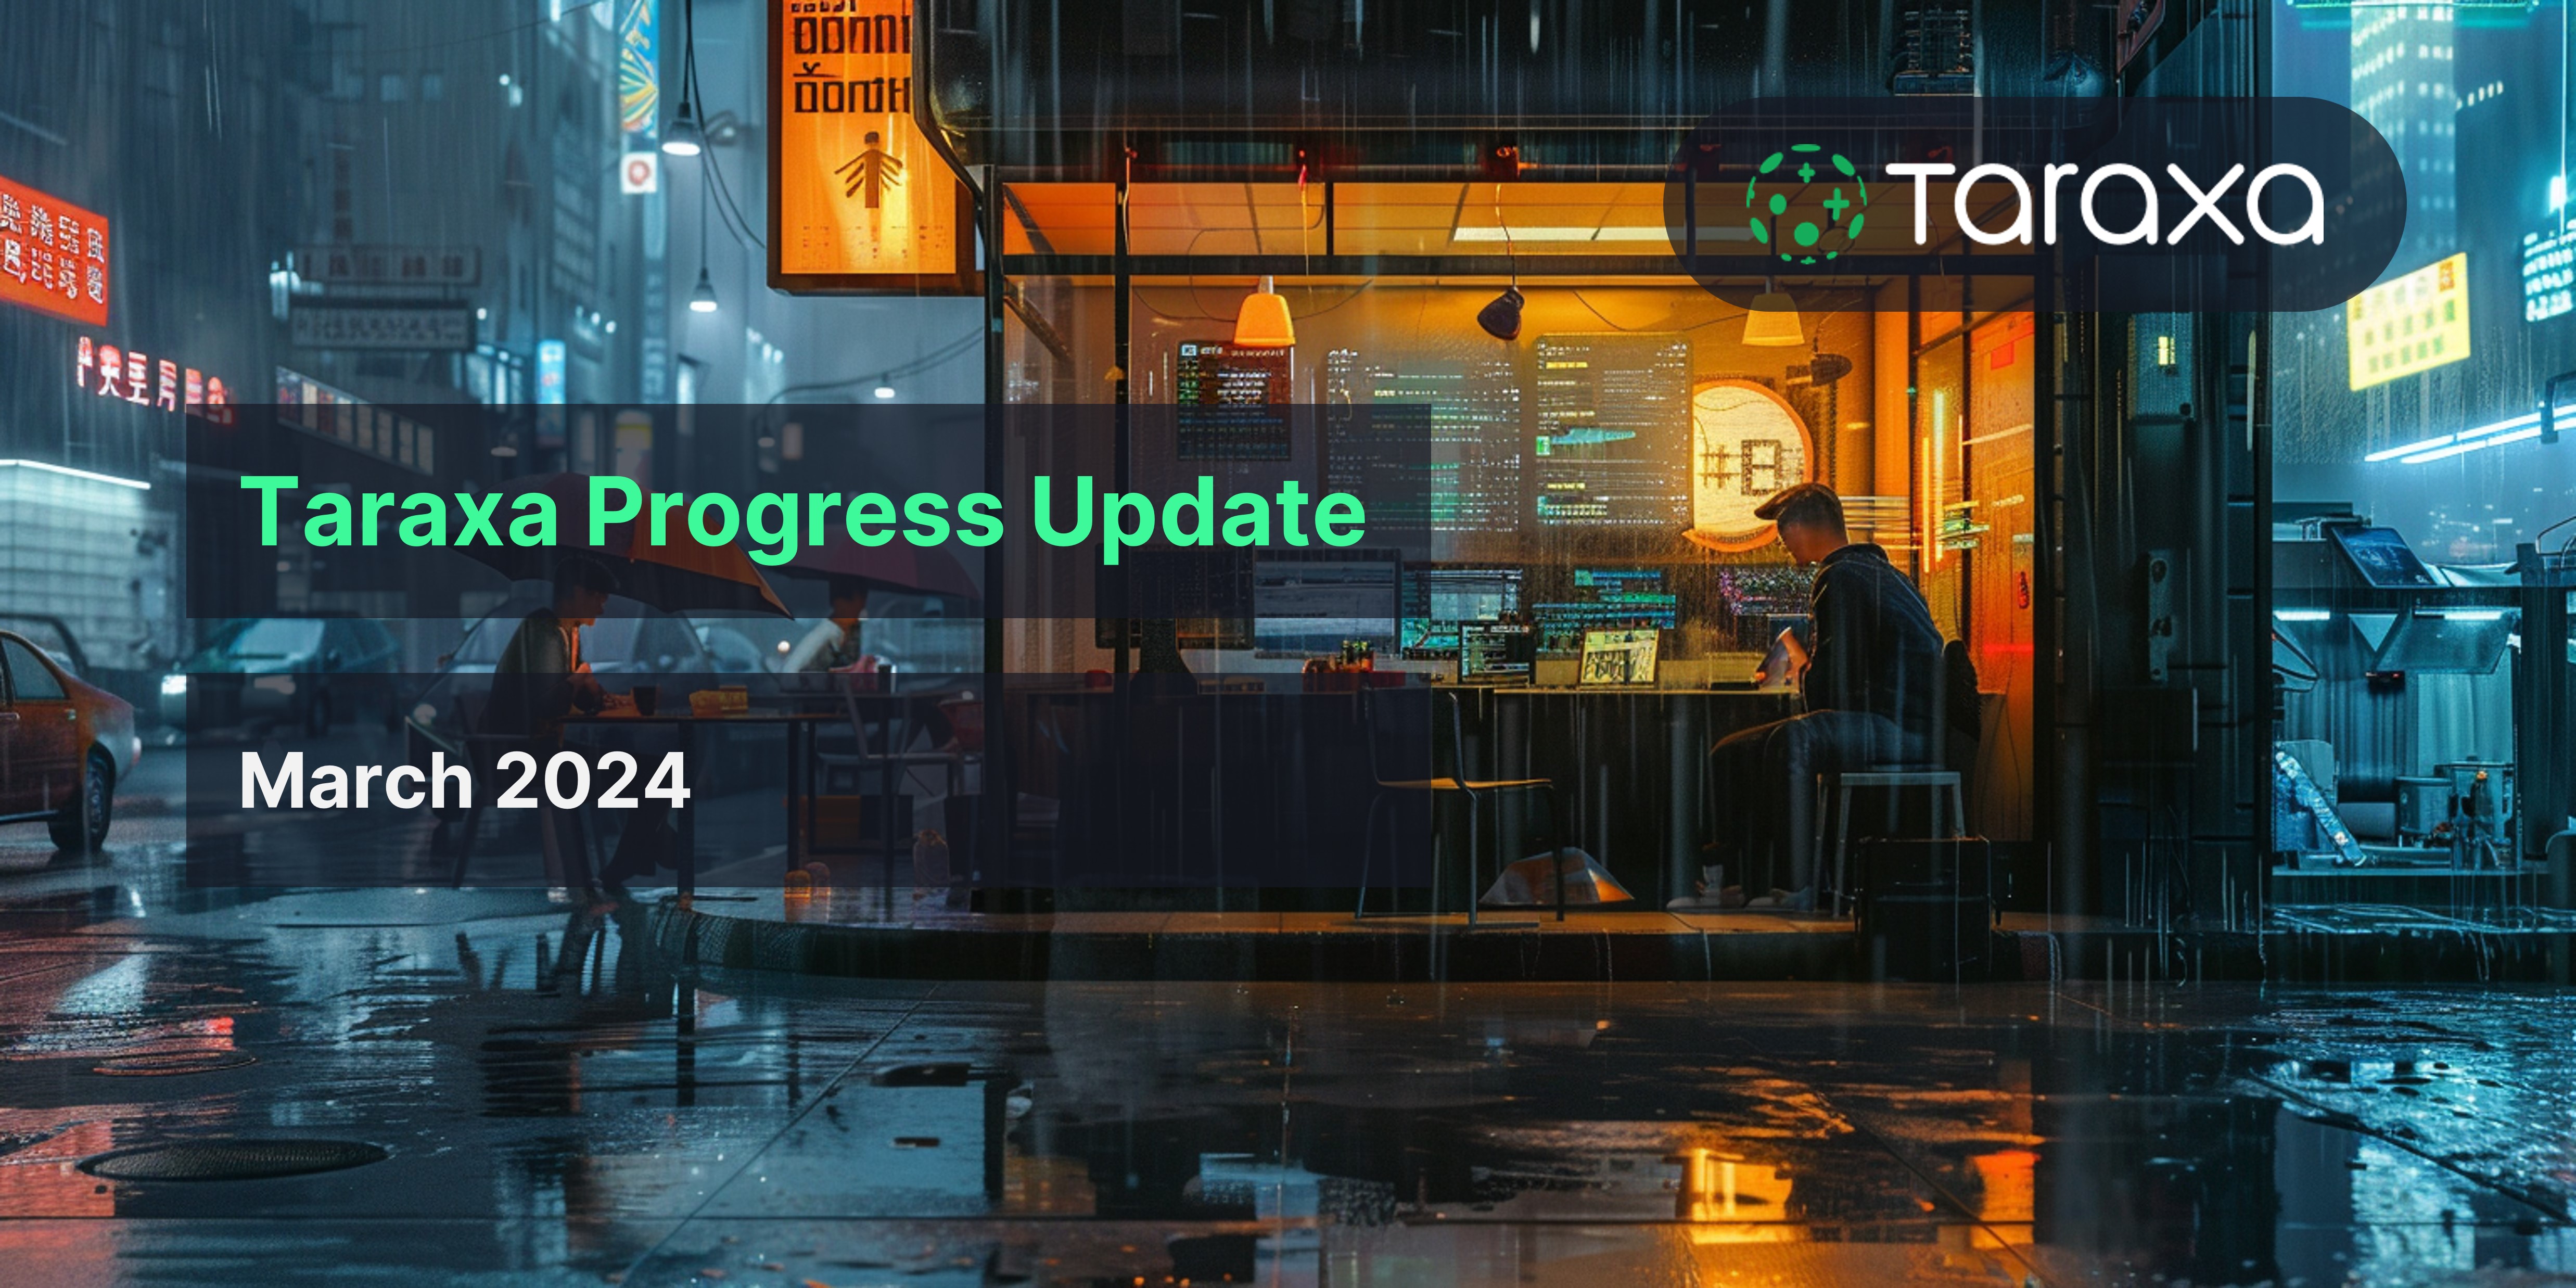 Taraxa Progress Update: March, 2024